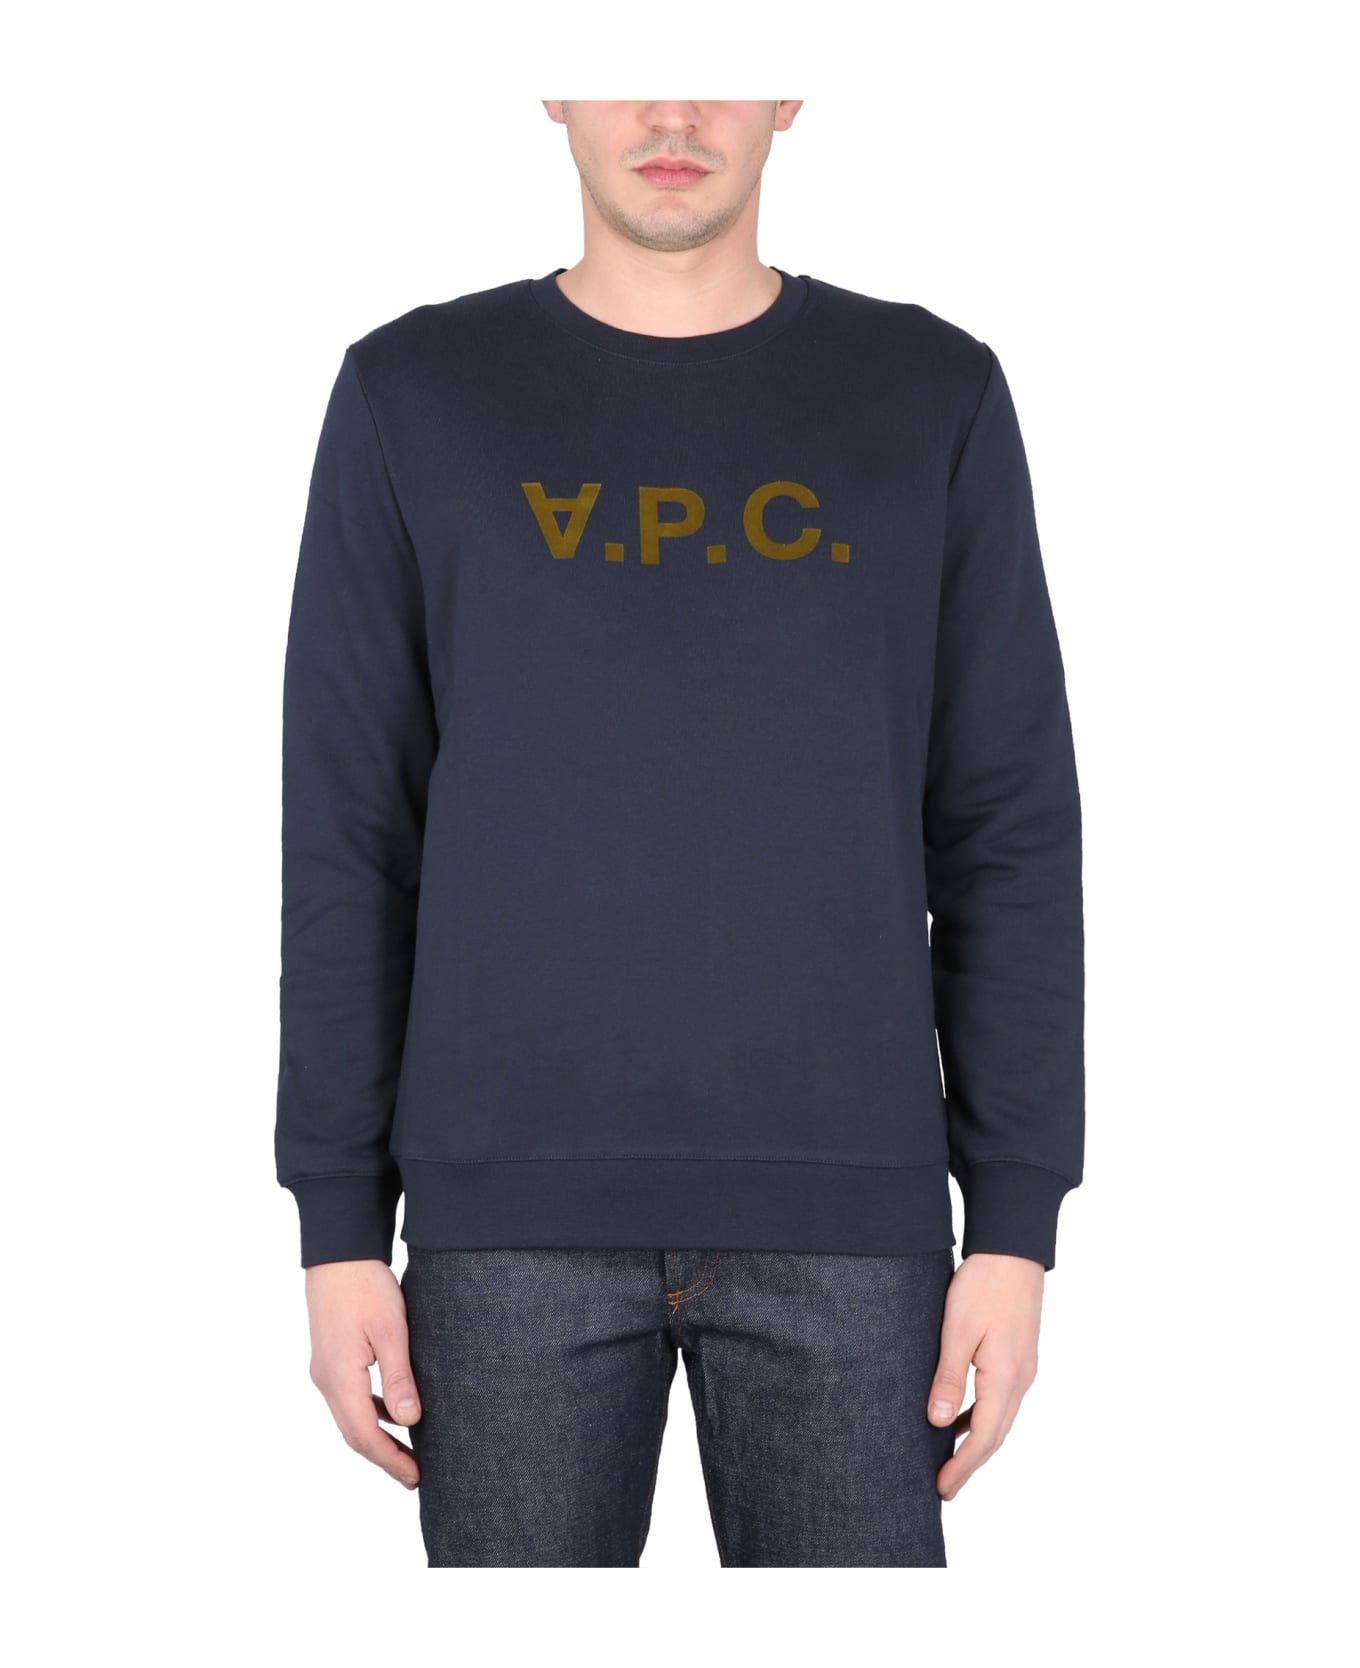 A.P.C. Sweatshirt With V.p.c Logo - Tis Marine Kaki